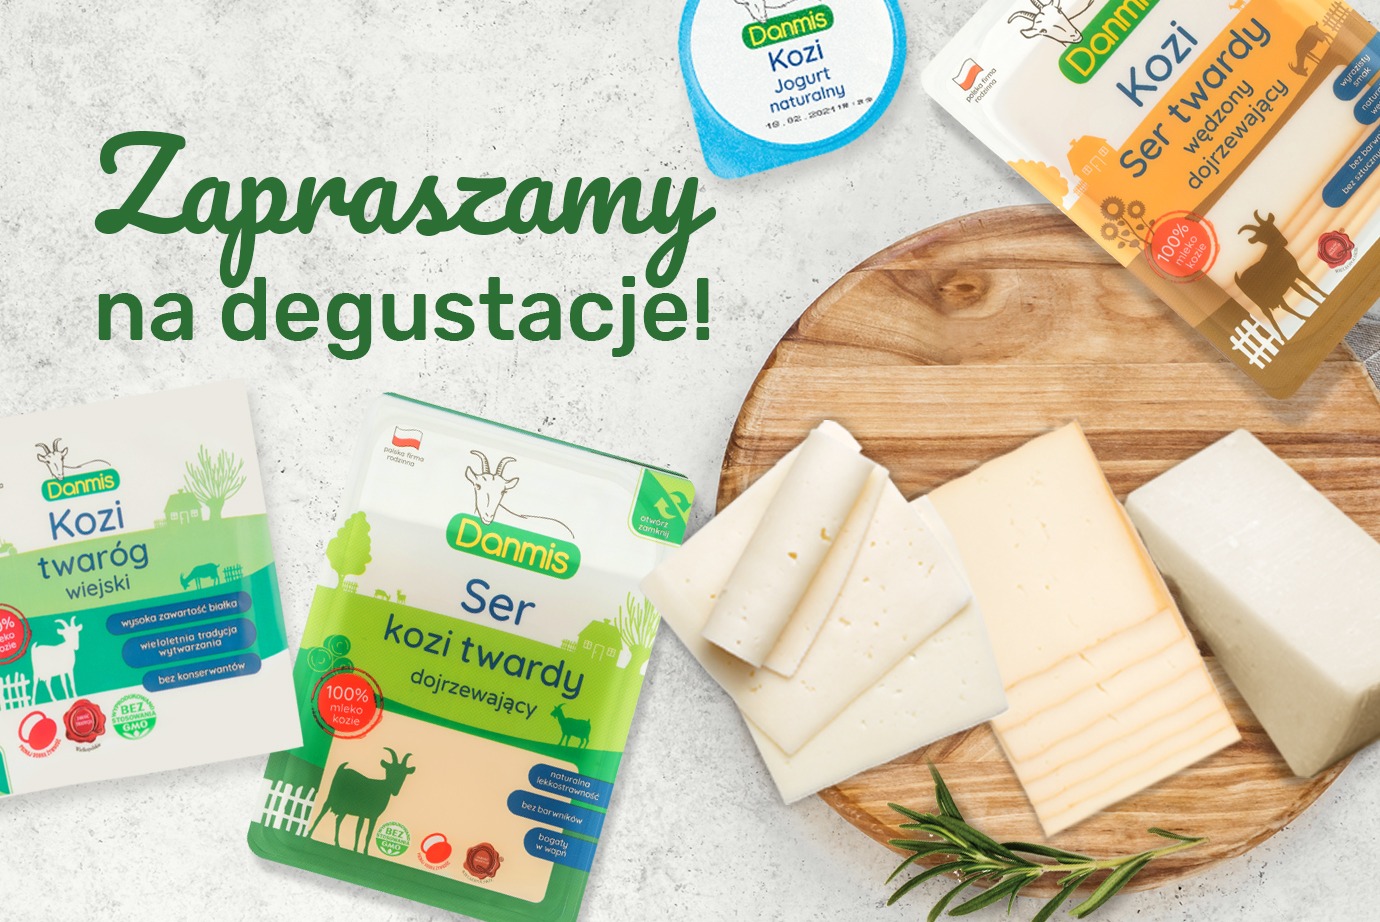 Poznaj Specjały Regionu na degustacjach w całej Polsce!